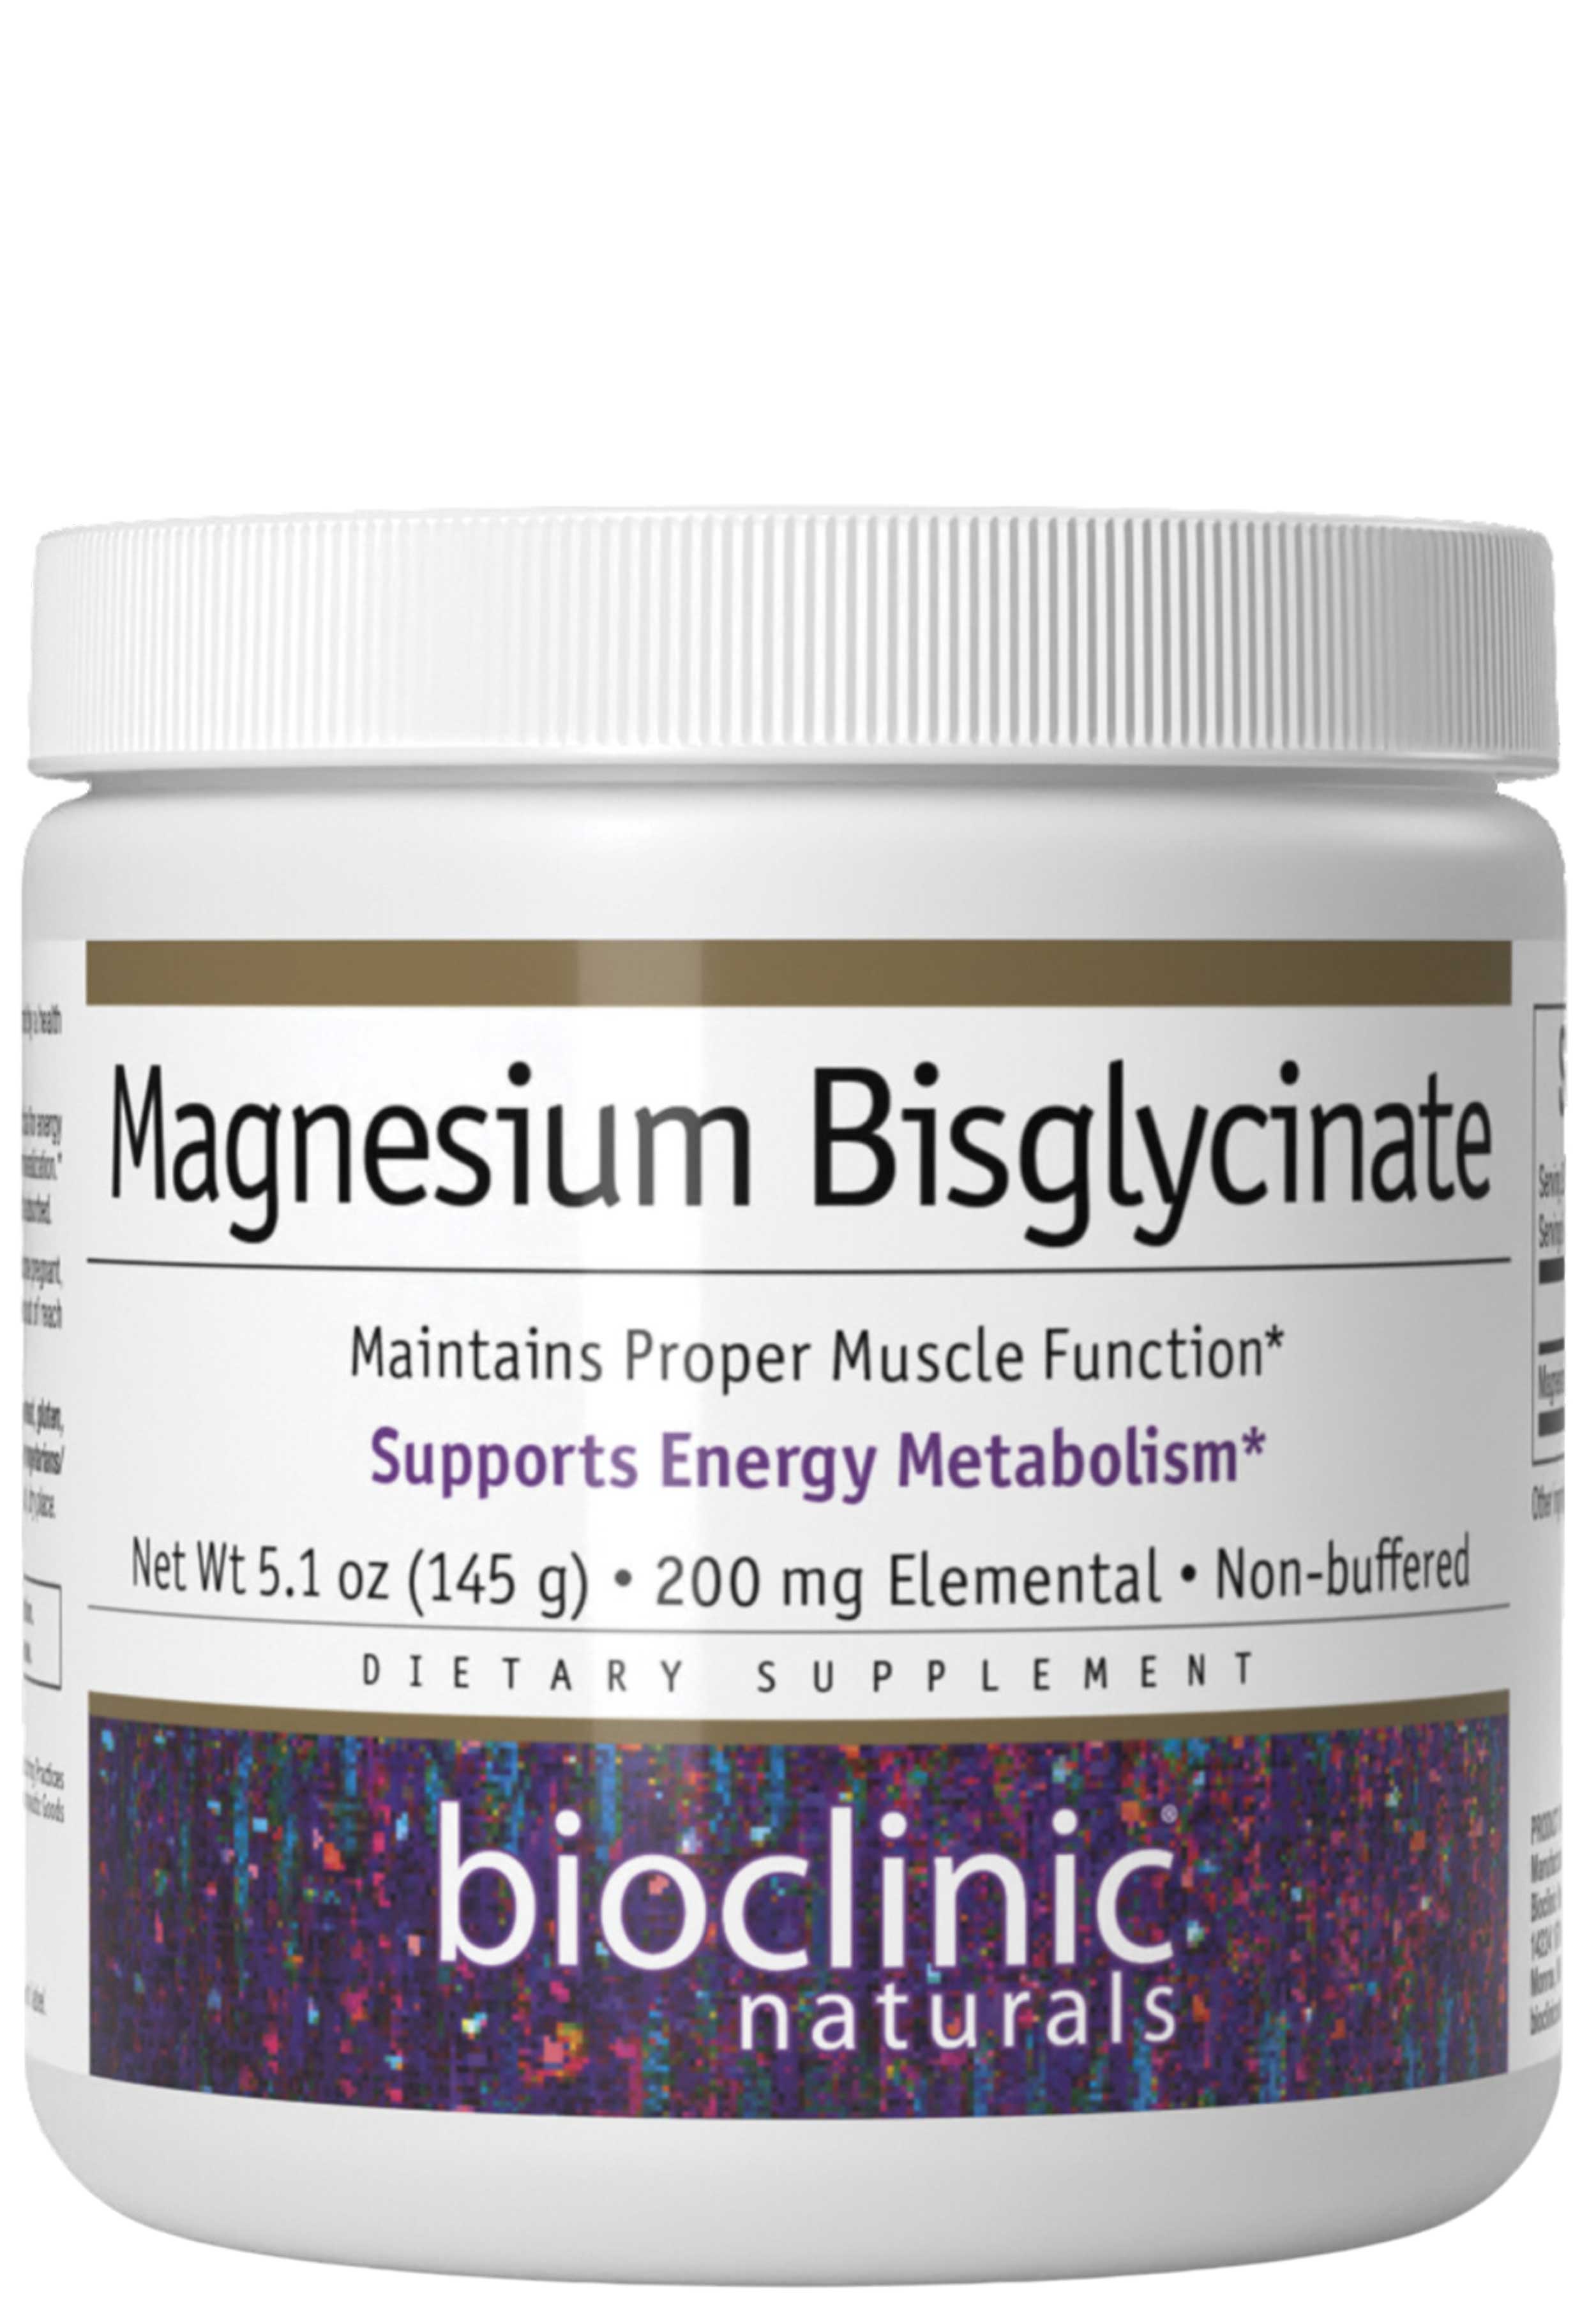 Bioclinic Naturals Magnesium Bisglycinate